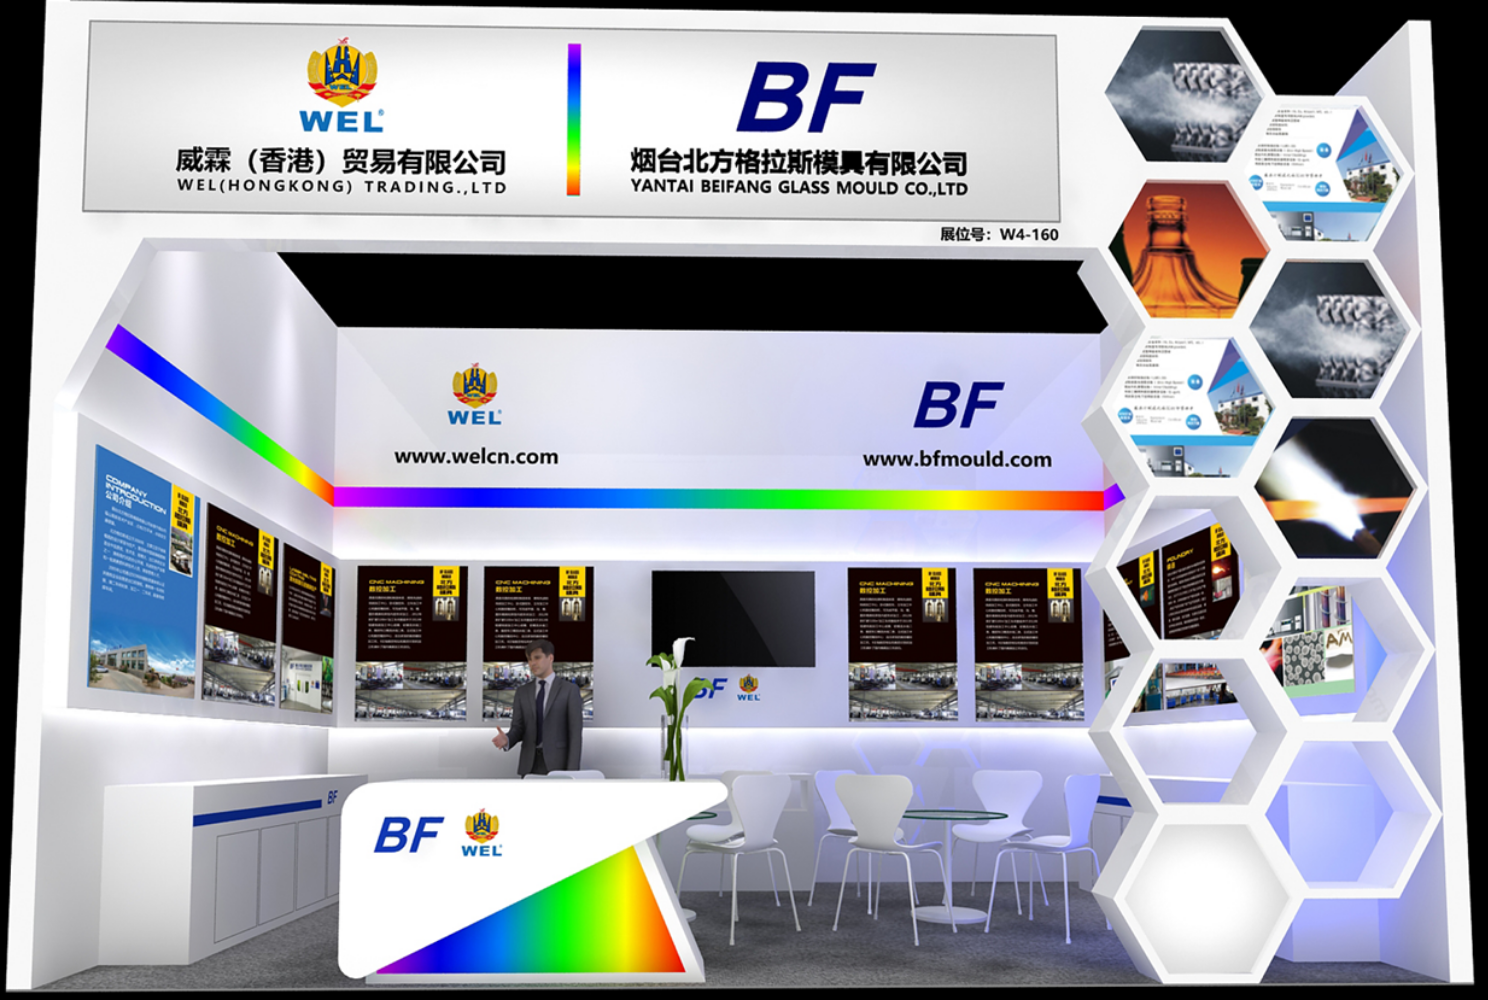 威霖公司将参加第32届中国国际玻璃工业技术展览会